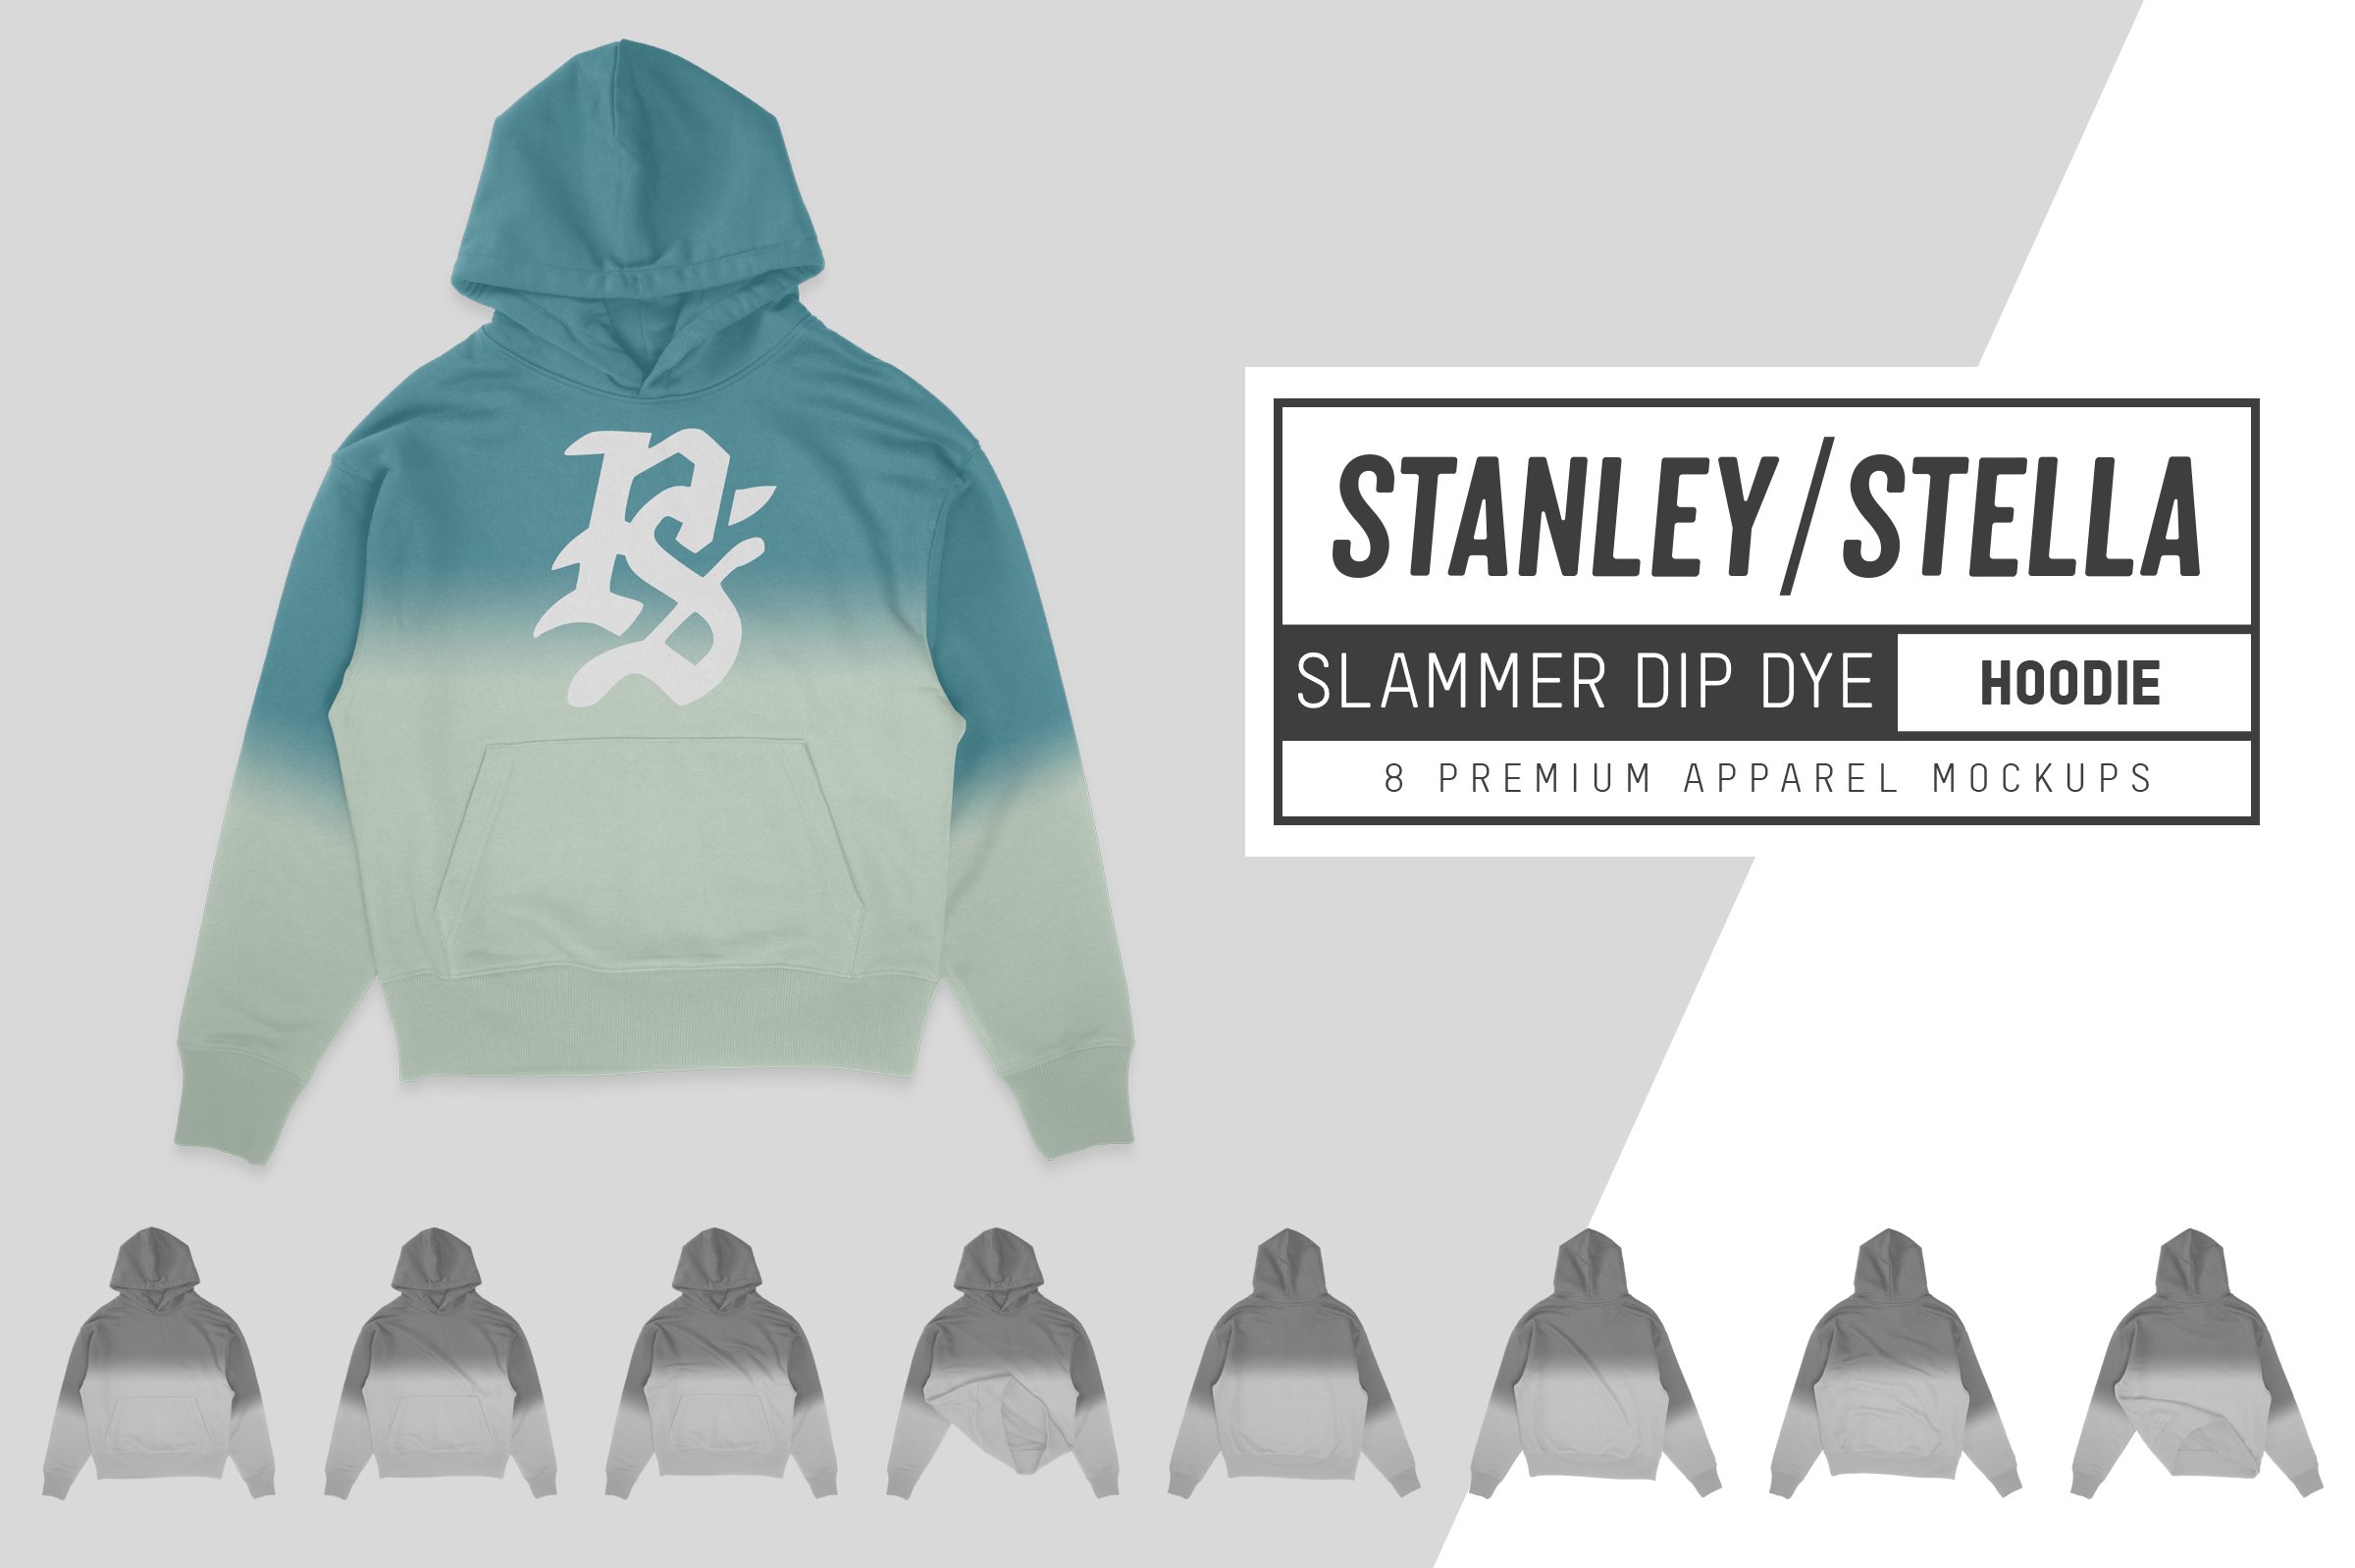 Stanley/Stella Slammer Dip Dye Hoody cover image.